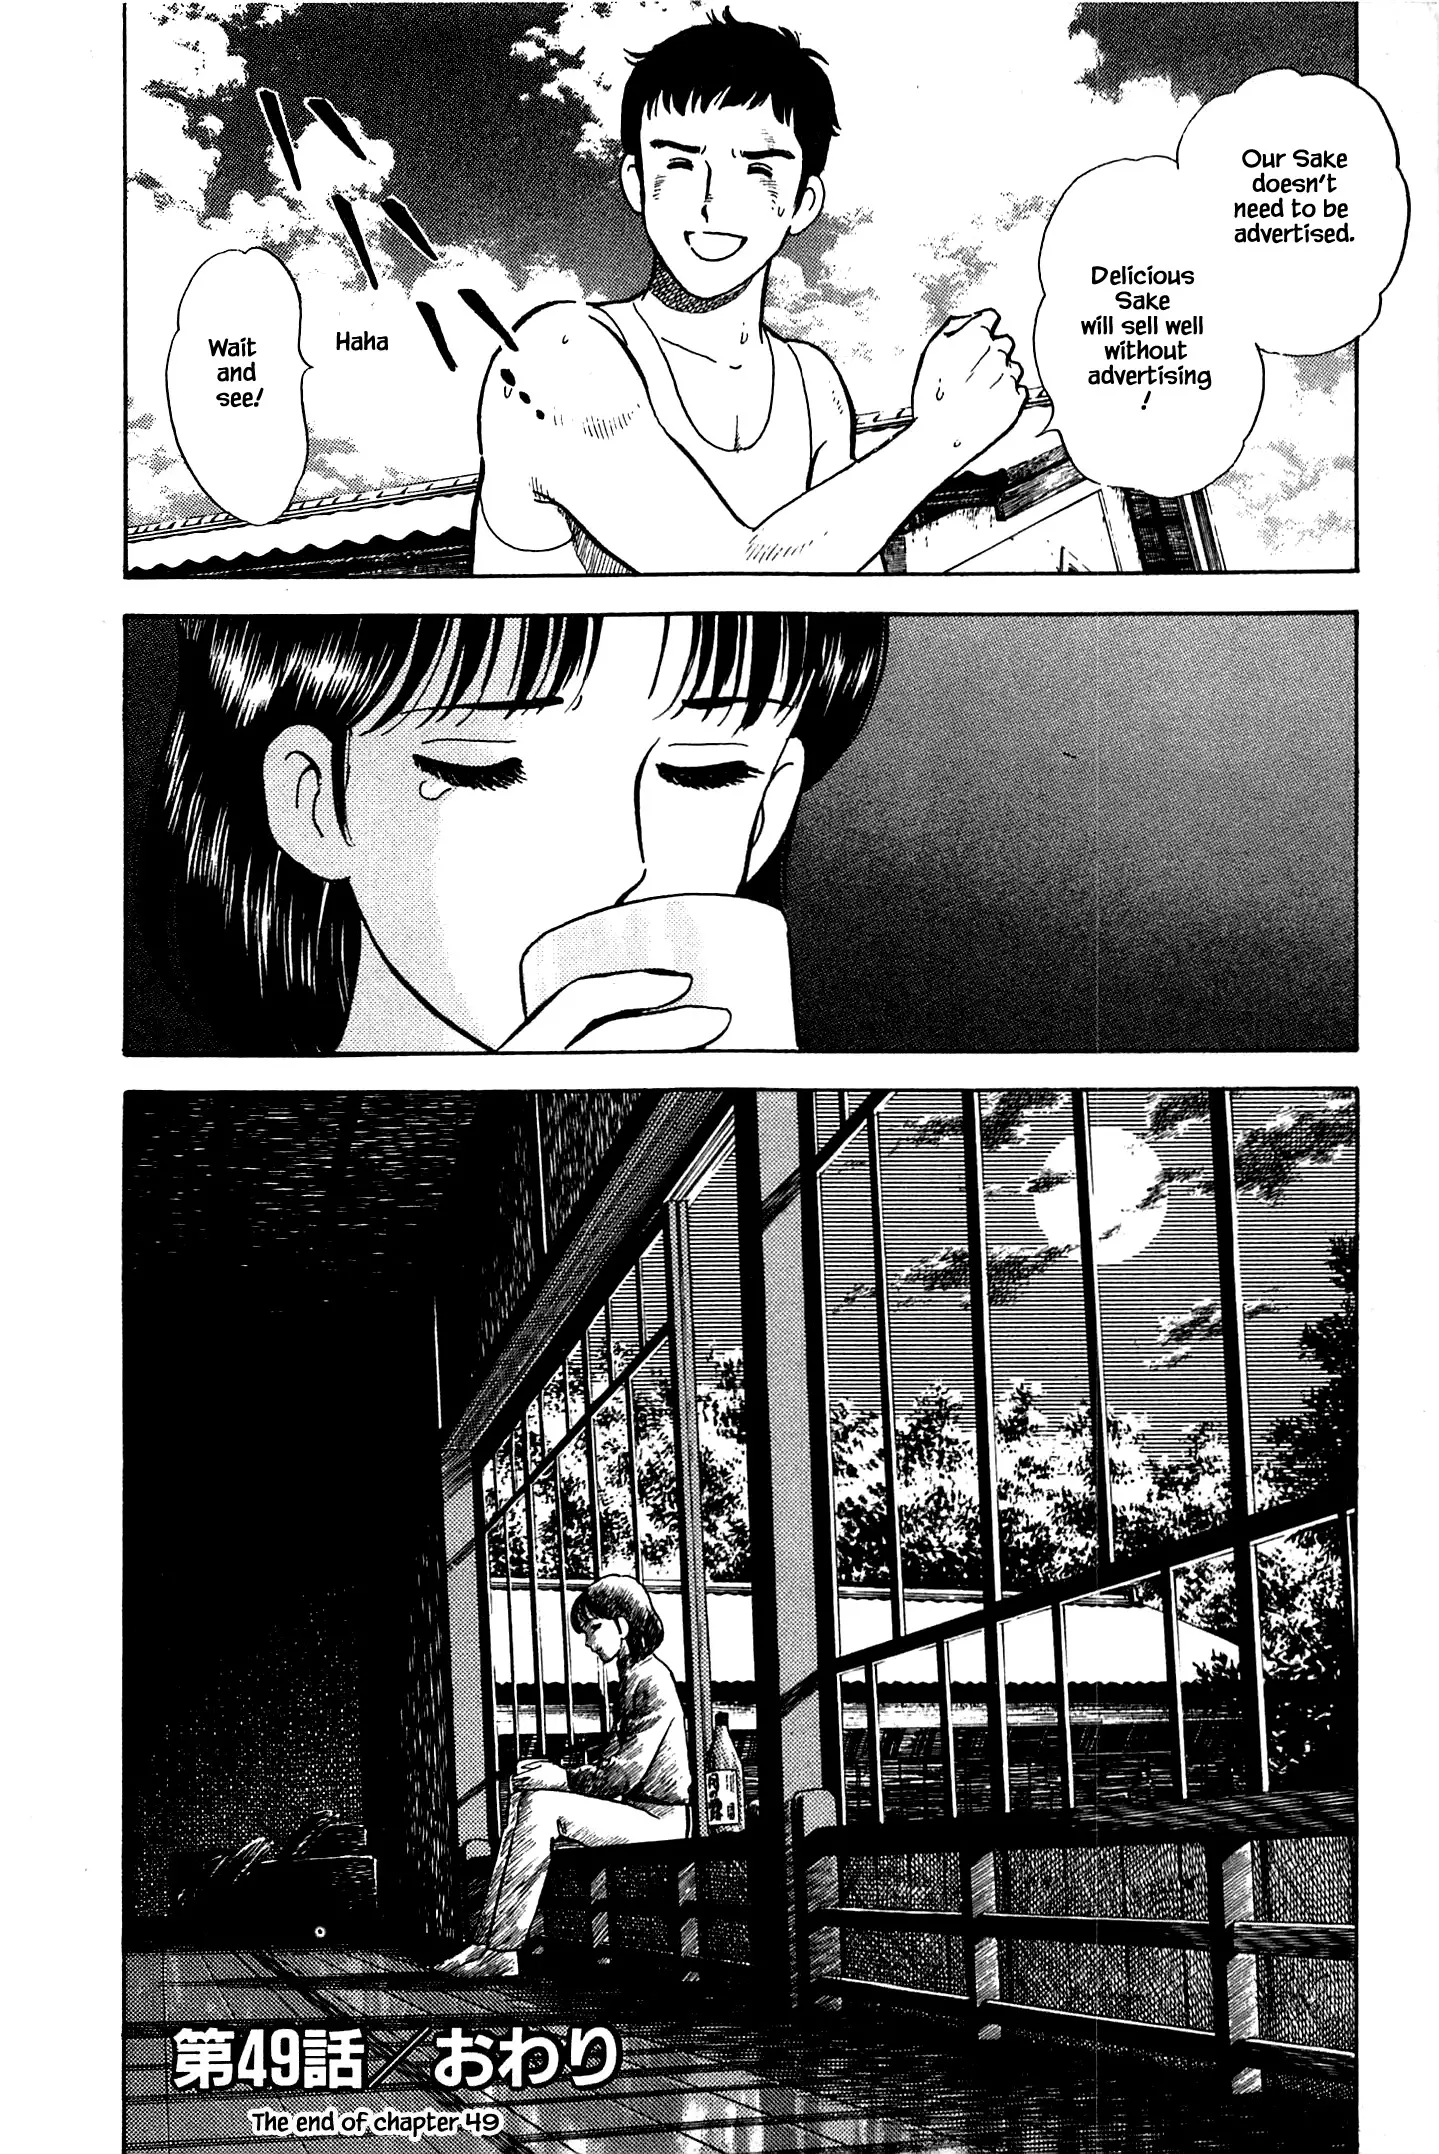 Natsuko's Sake - 49 page 20-1bdb131f